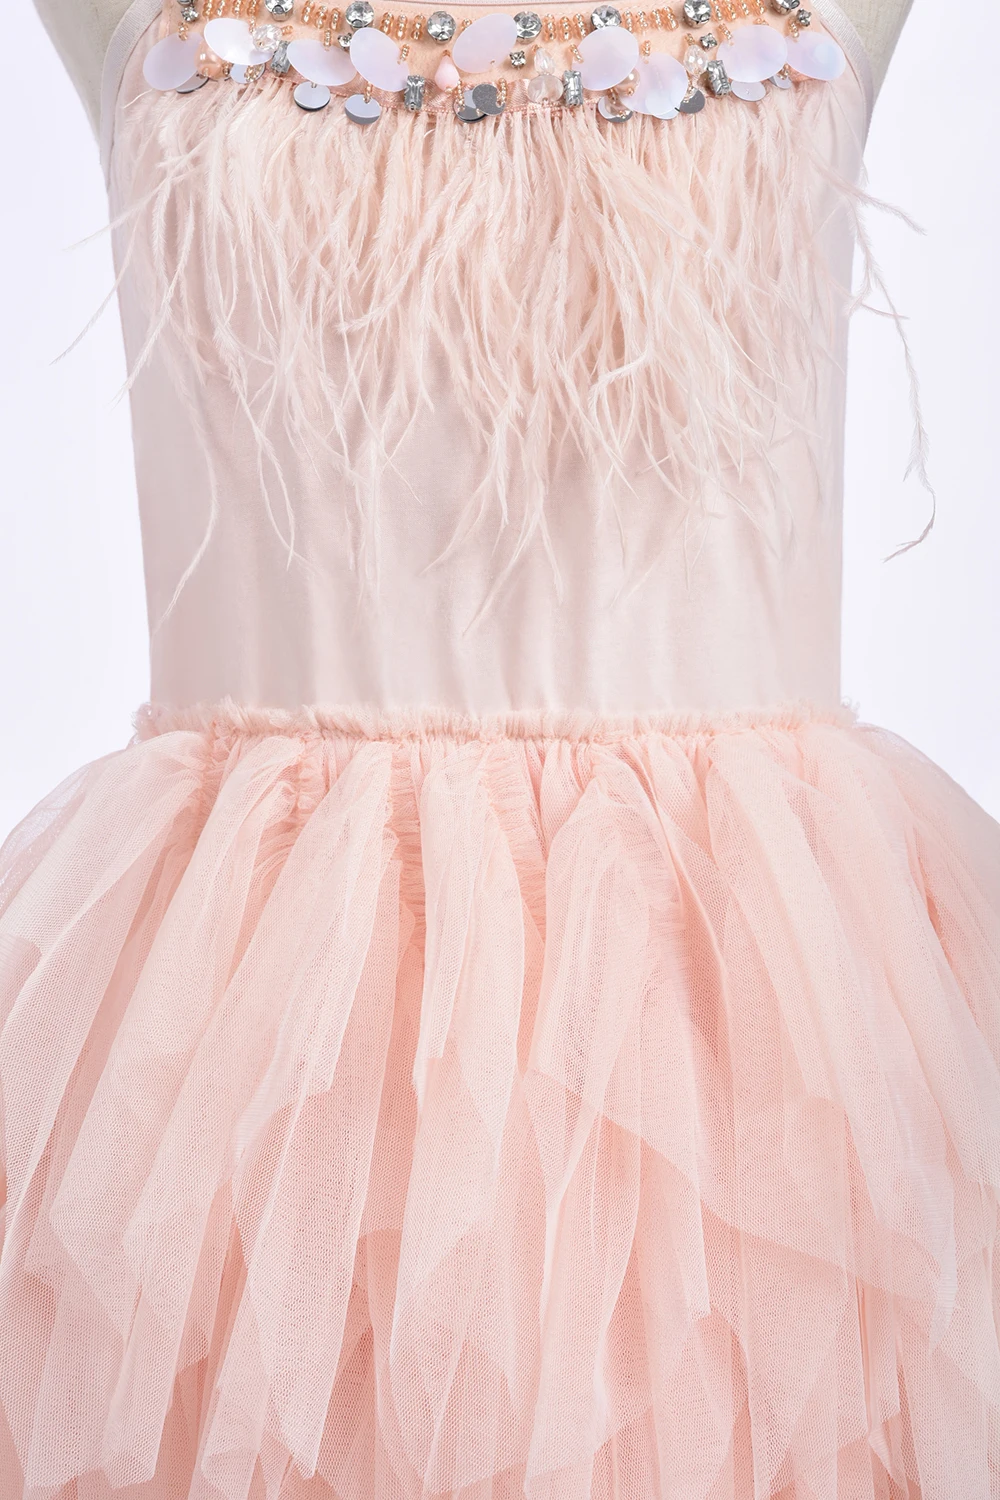 Irreguarly/фатиновые Платья с цветочным узором для девочек; коллекция года; нарядные платья для девочек с перьями из страз; платья для первого причастия; Детские платья для выпускного вечера